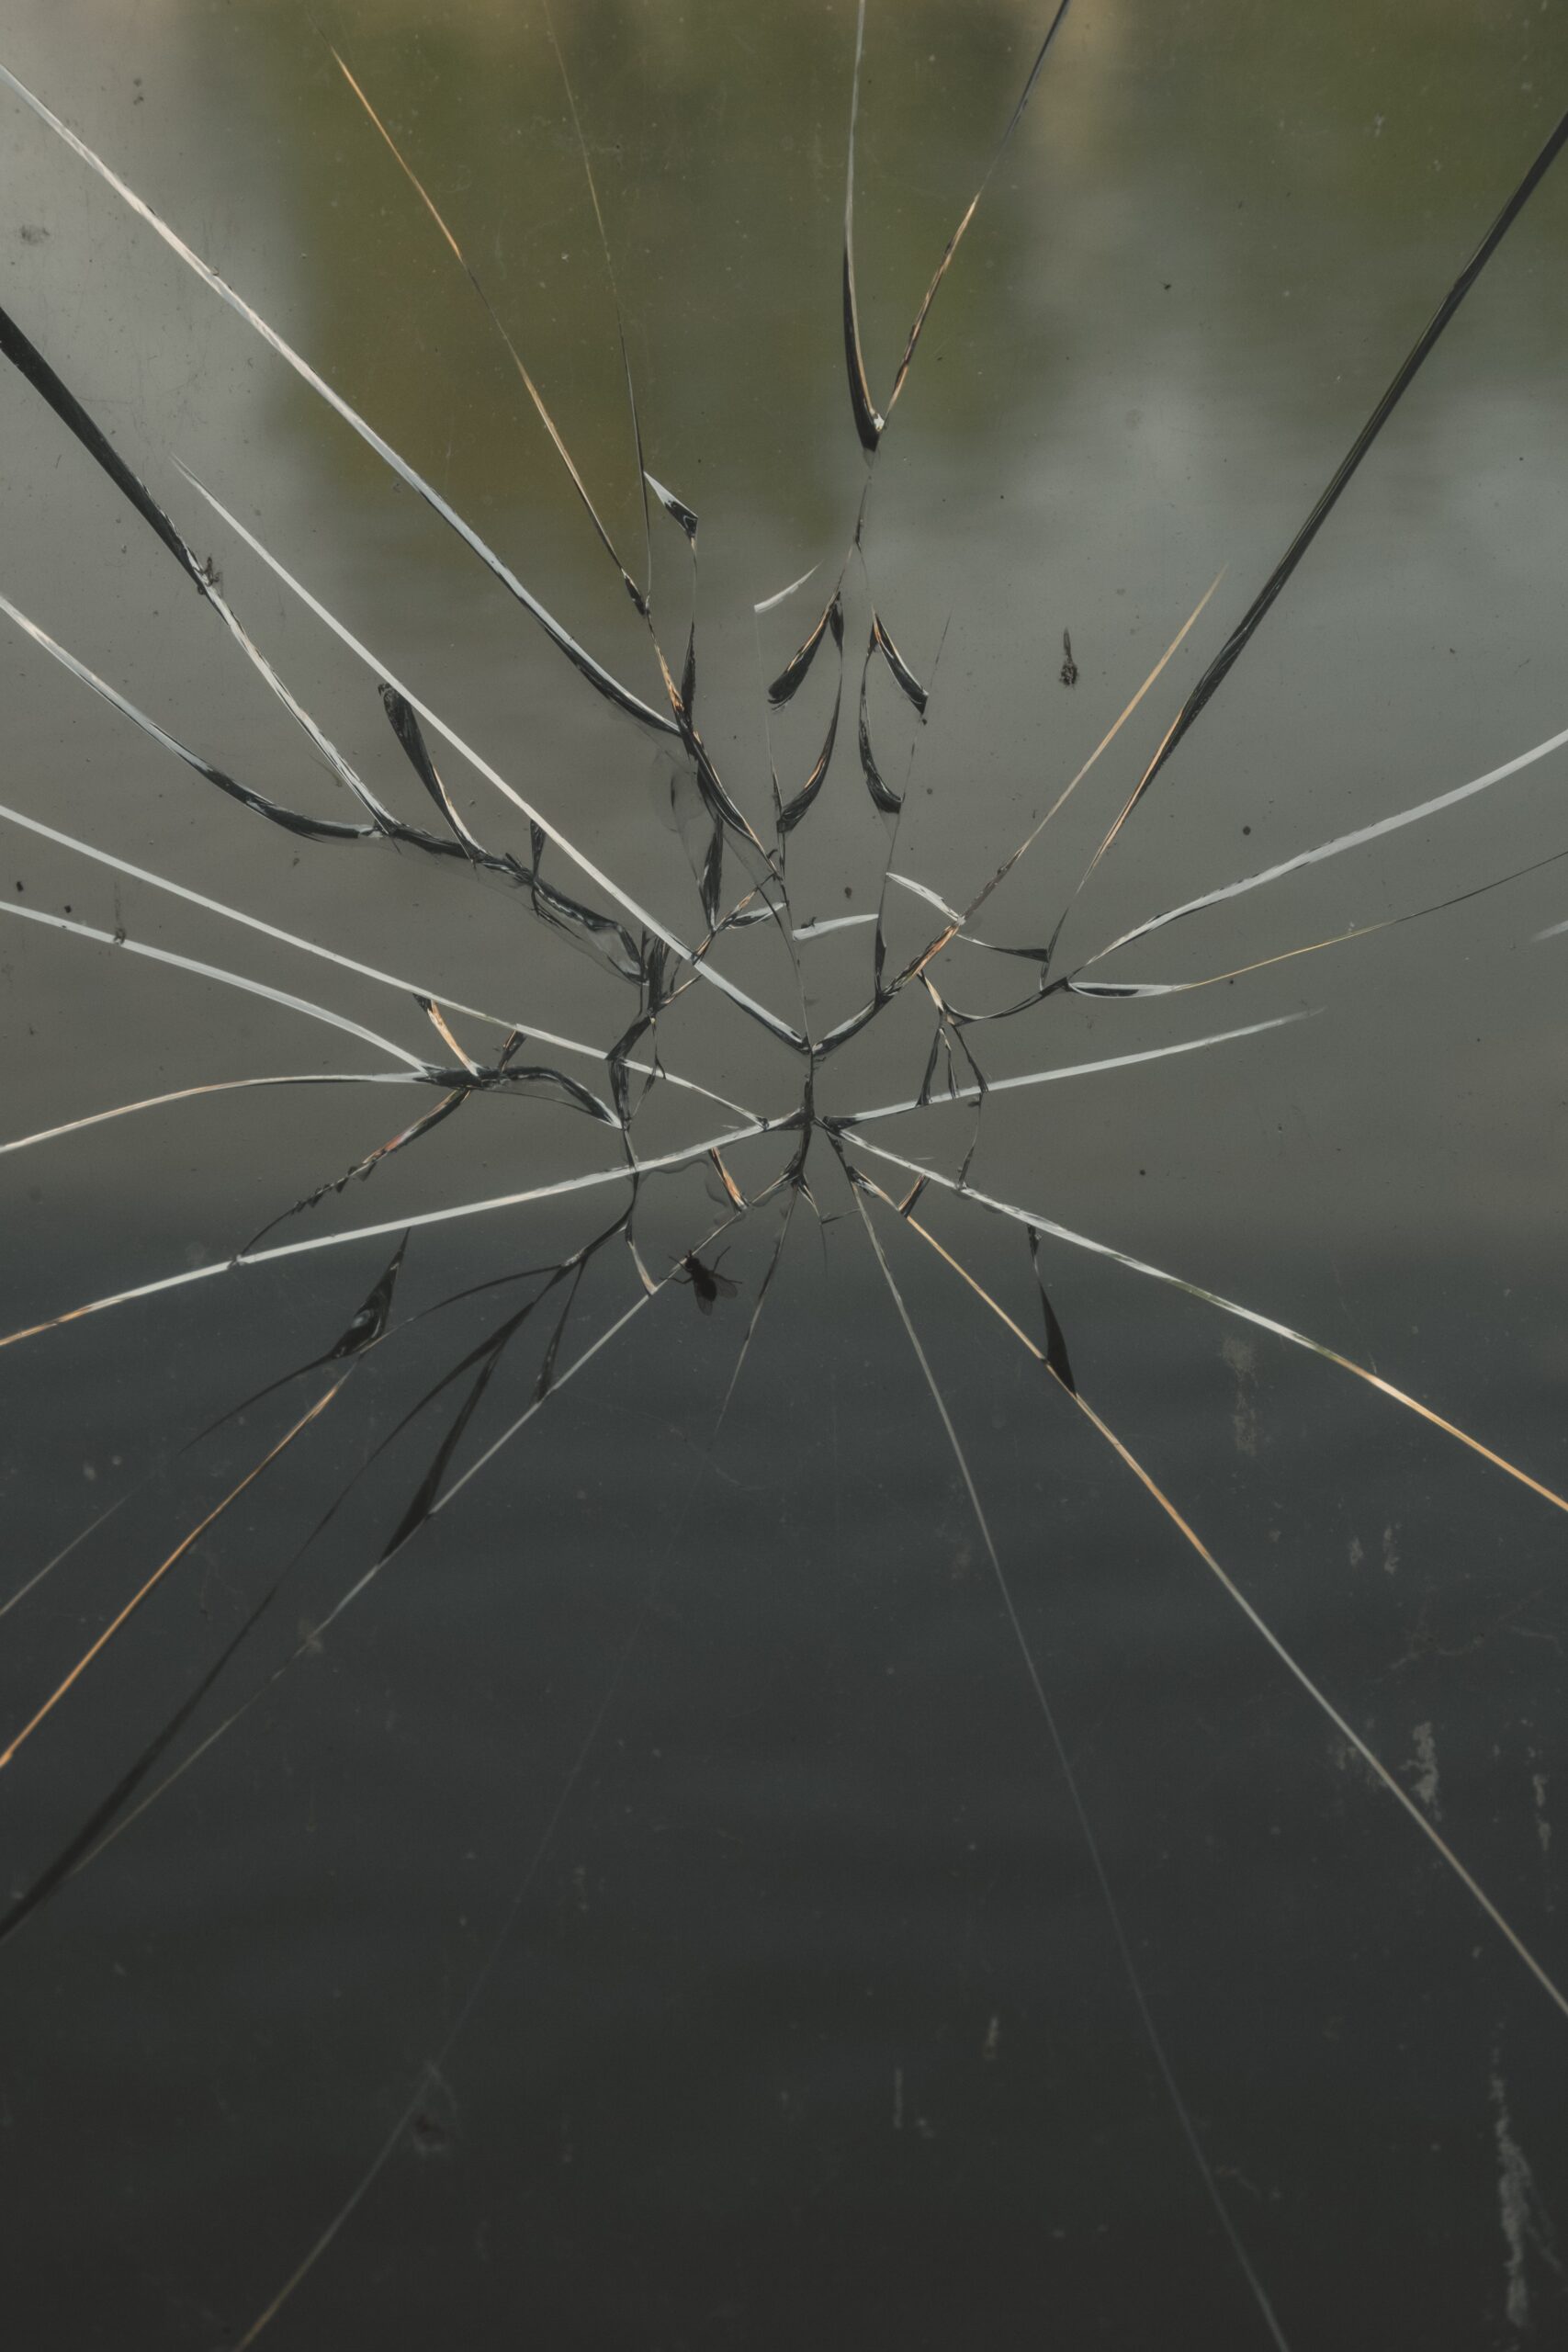 A photo of a broken glass window